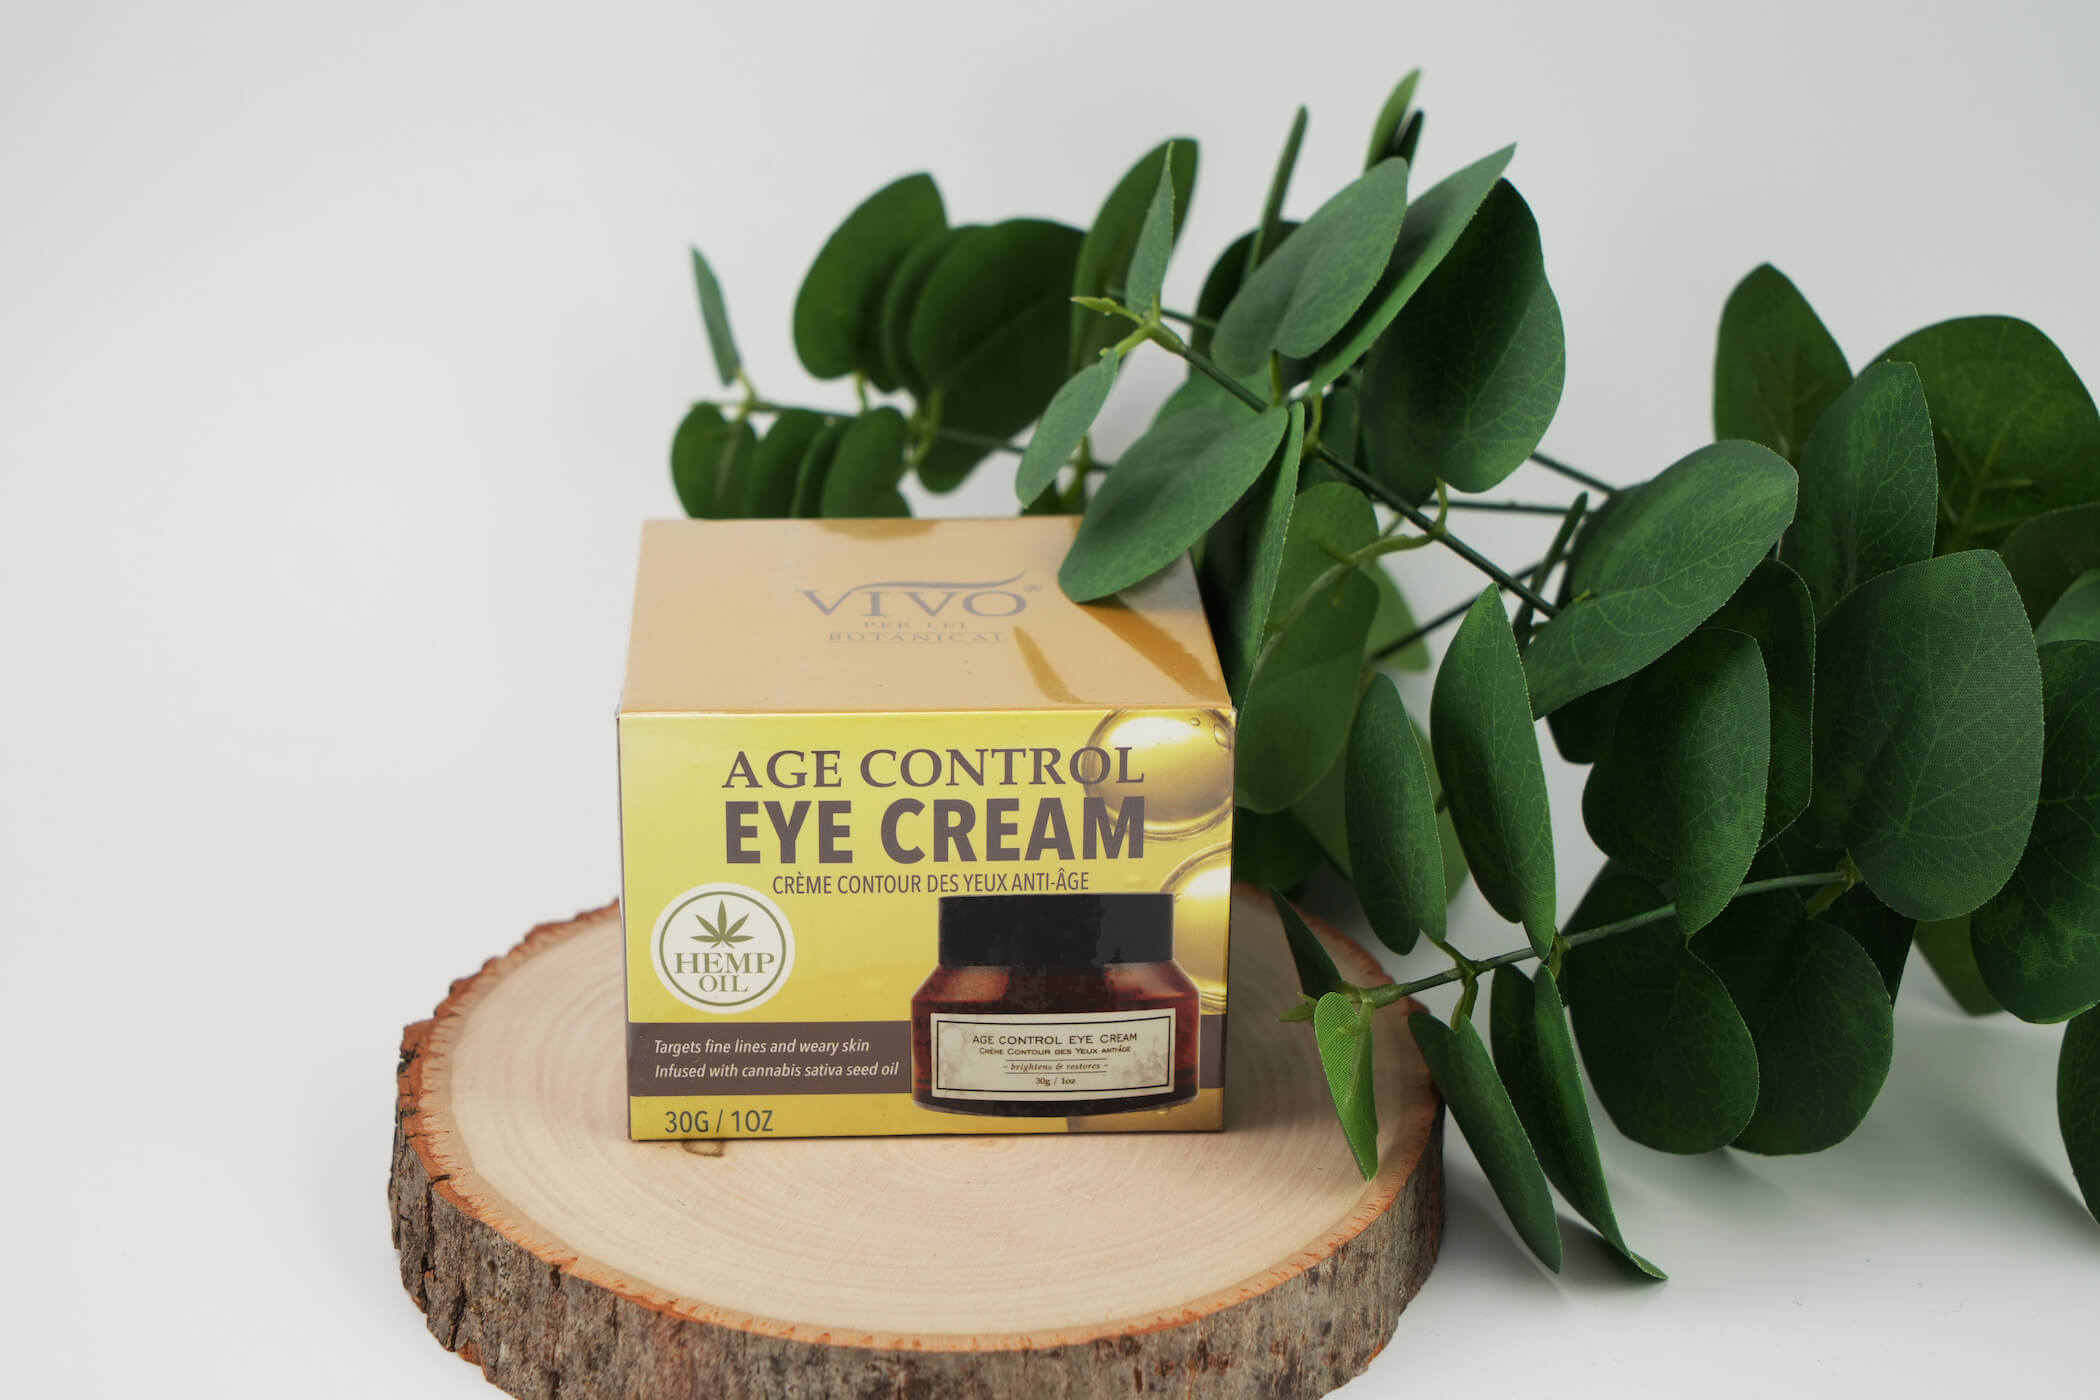 Age Control Eye Cream